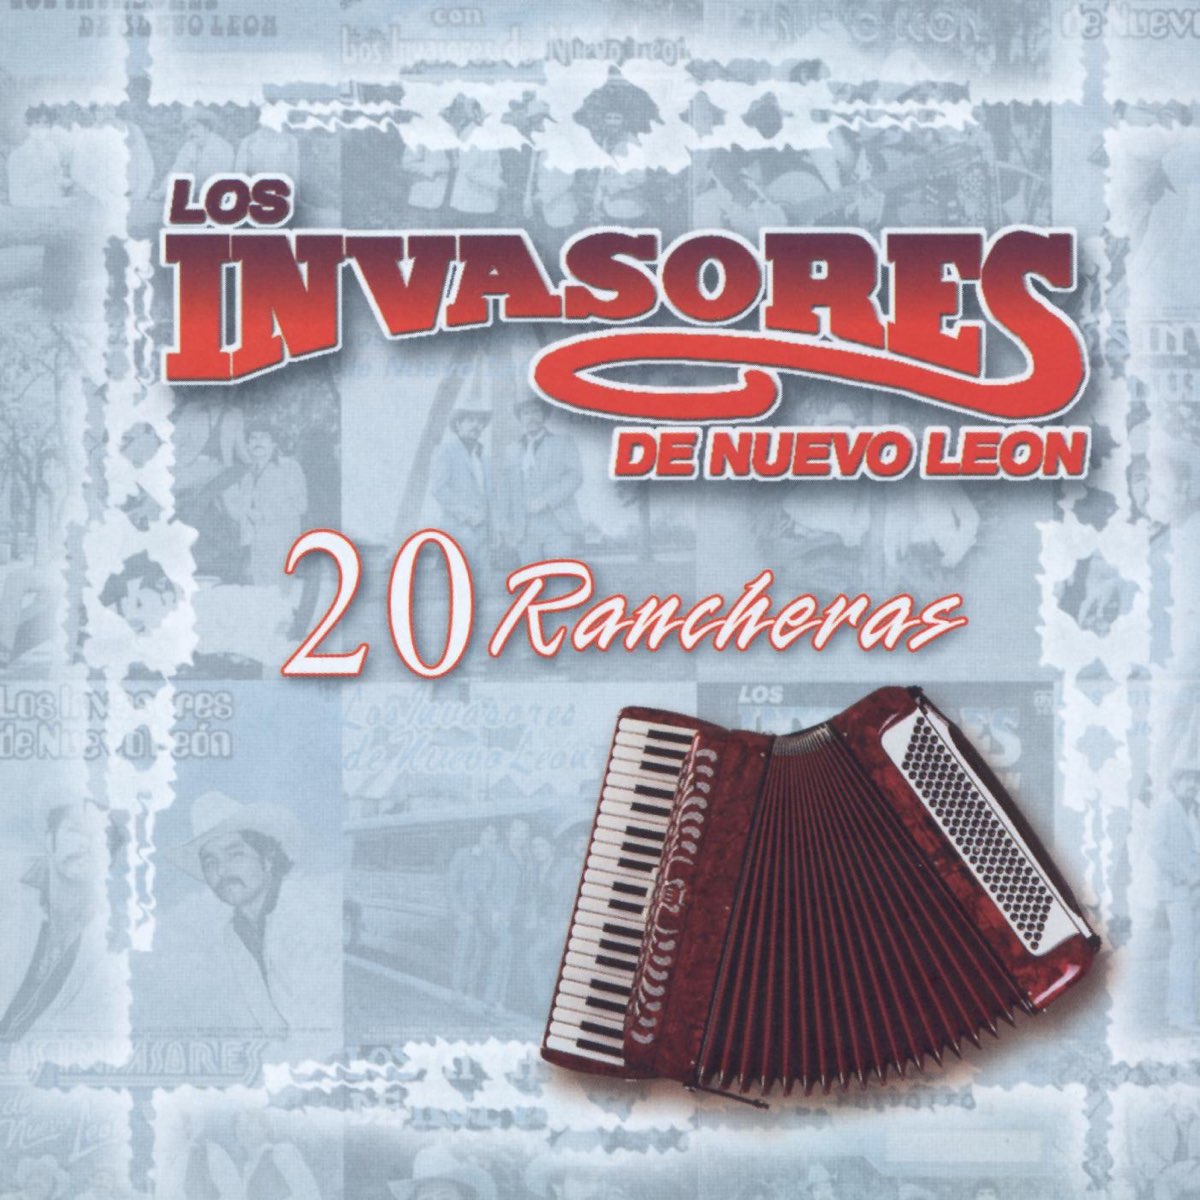 Los Invasores de Nuevo Leon: 20 Rancheras - Album by Los Invasores ...